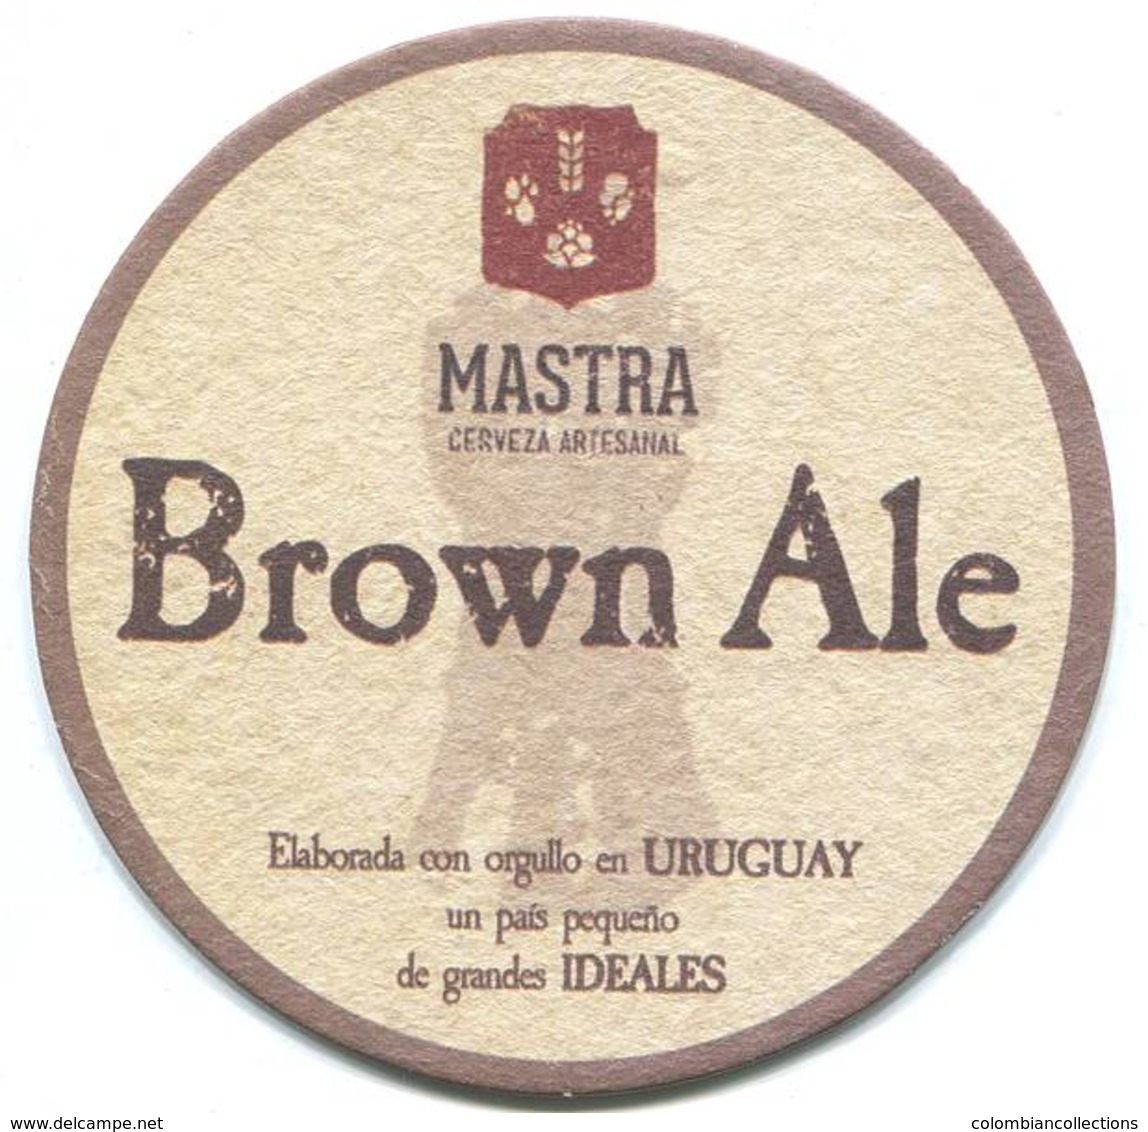 Lote U11, Uruguay, Posavaso, Coaster, Mastra, Brown Ale - Portavasos